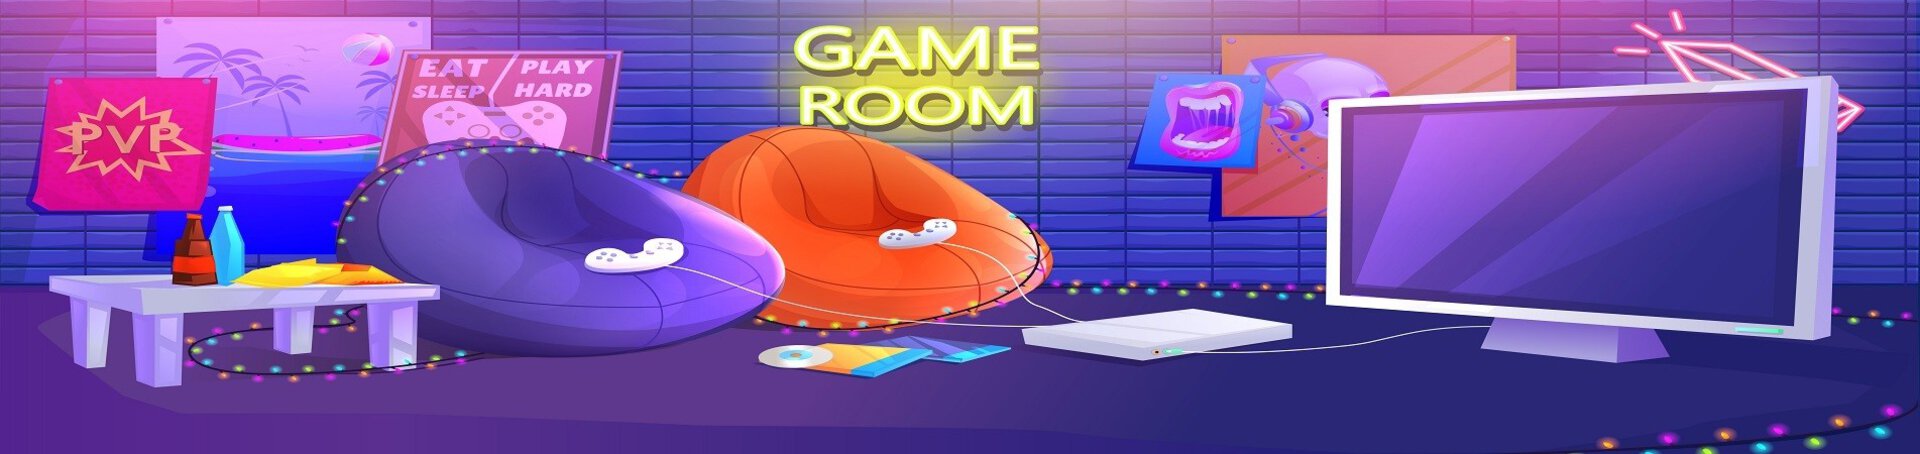 Finden Sie Ihre Casual Gaming-Einrichtung. Moderne, hochwertige Sofas mit verschiedenen Features wie Steckdosen, Beleuchtung oder Getränkehalter